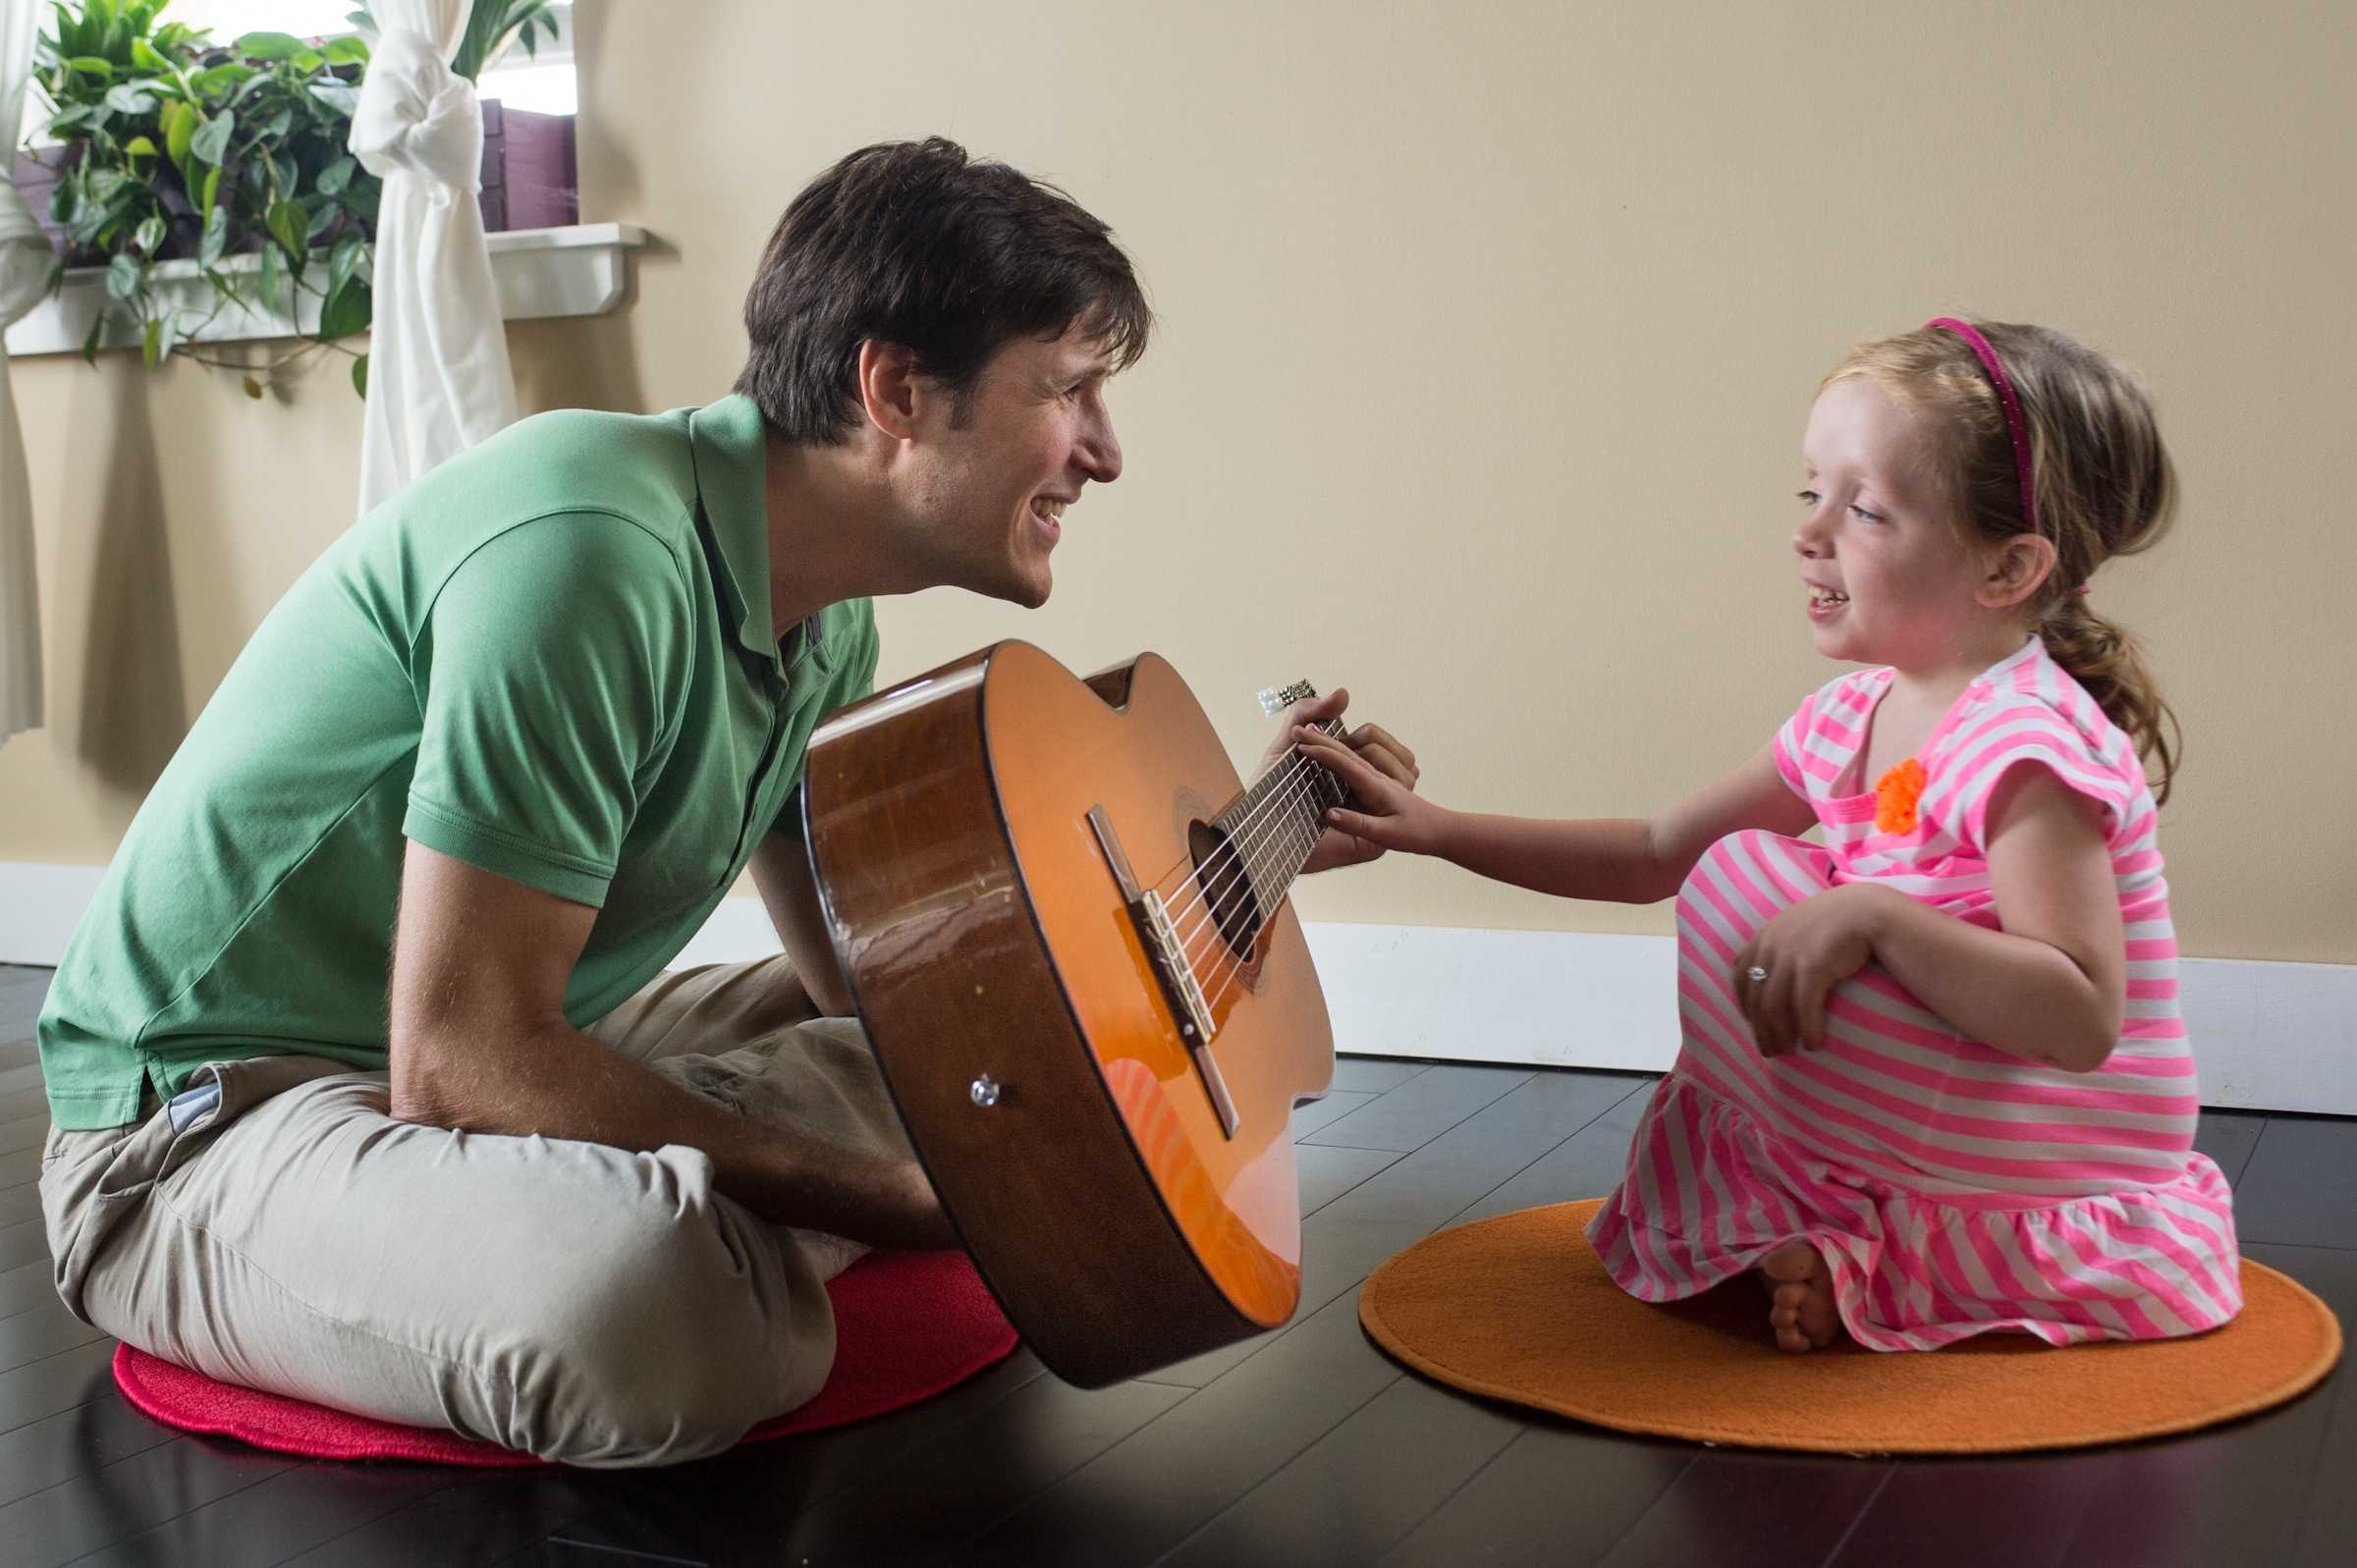 Музыкальная игры как средство музыкального. Рецептивная Музыкотерапия. Музыкальные инструменты для детей. Музыкальная терапия. Музыкальная терапия для детей.